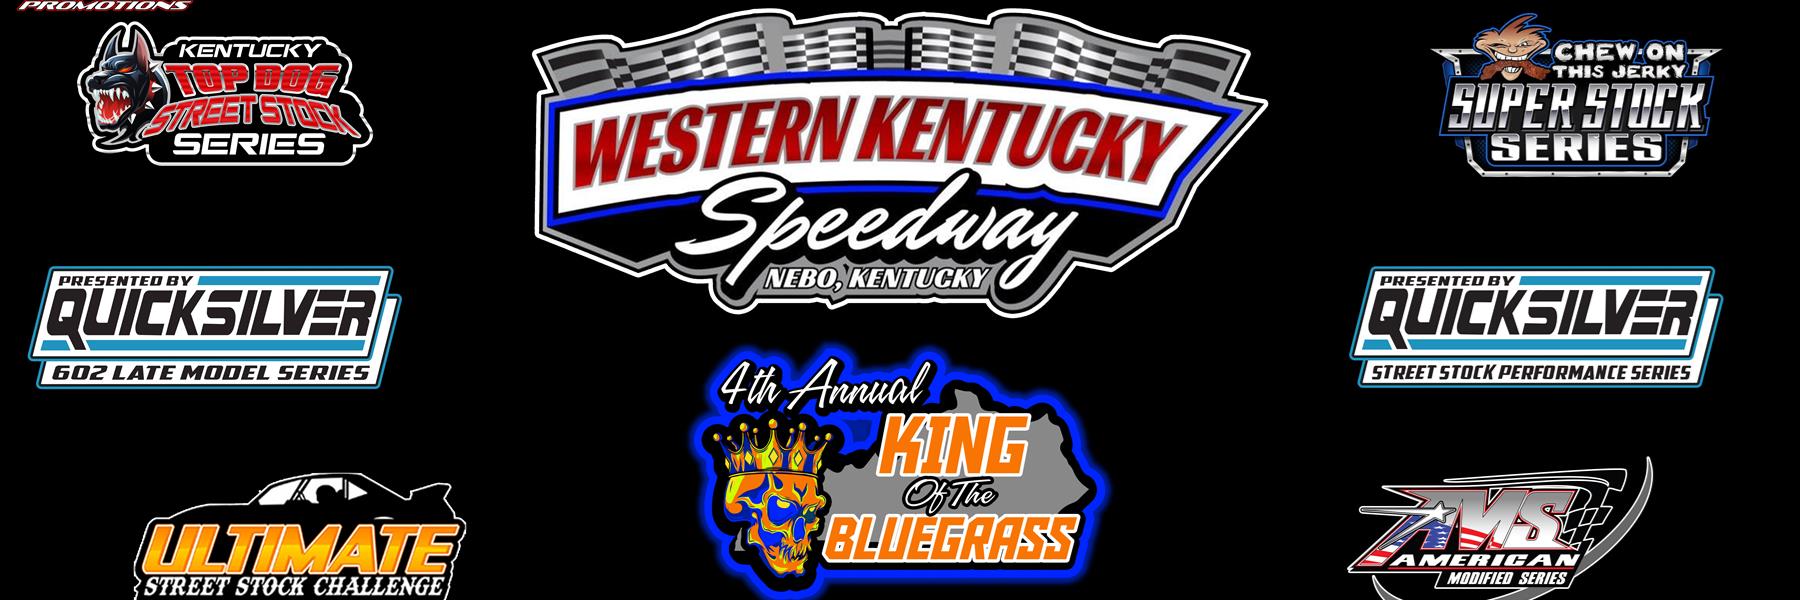 7/23/2022 - Western Kentucky Speedway